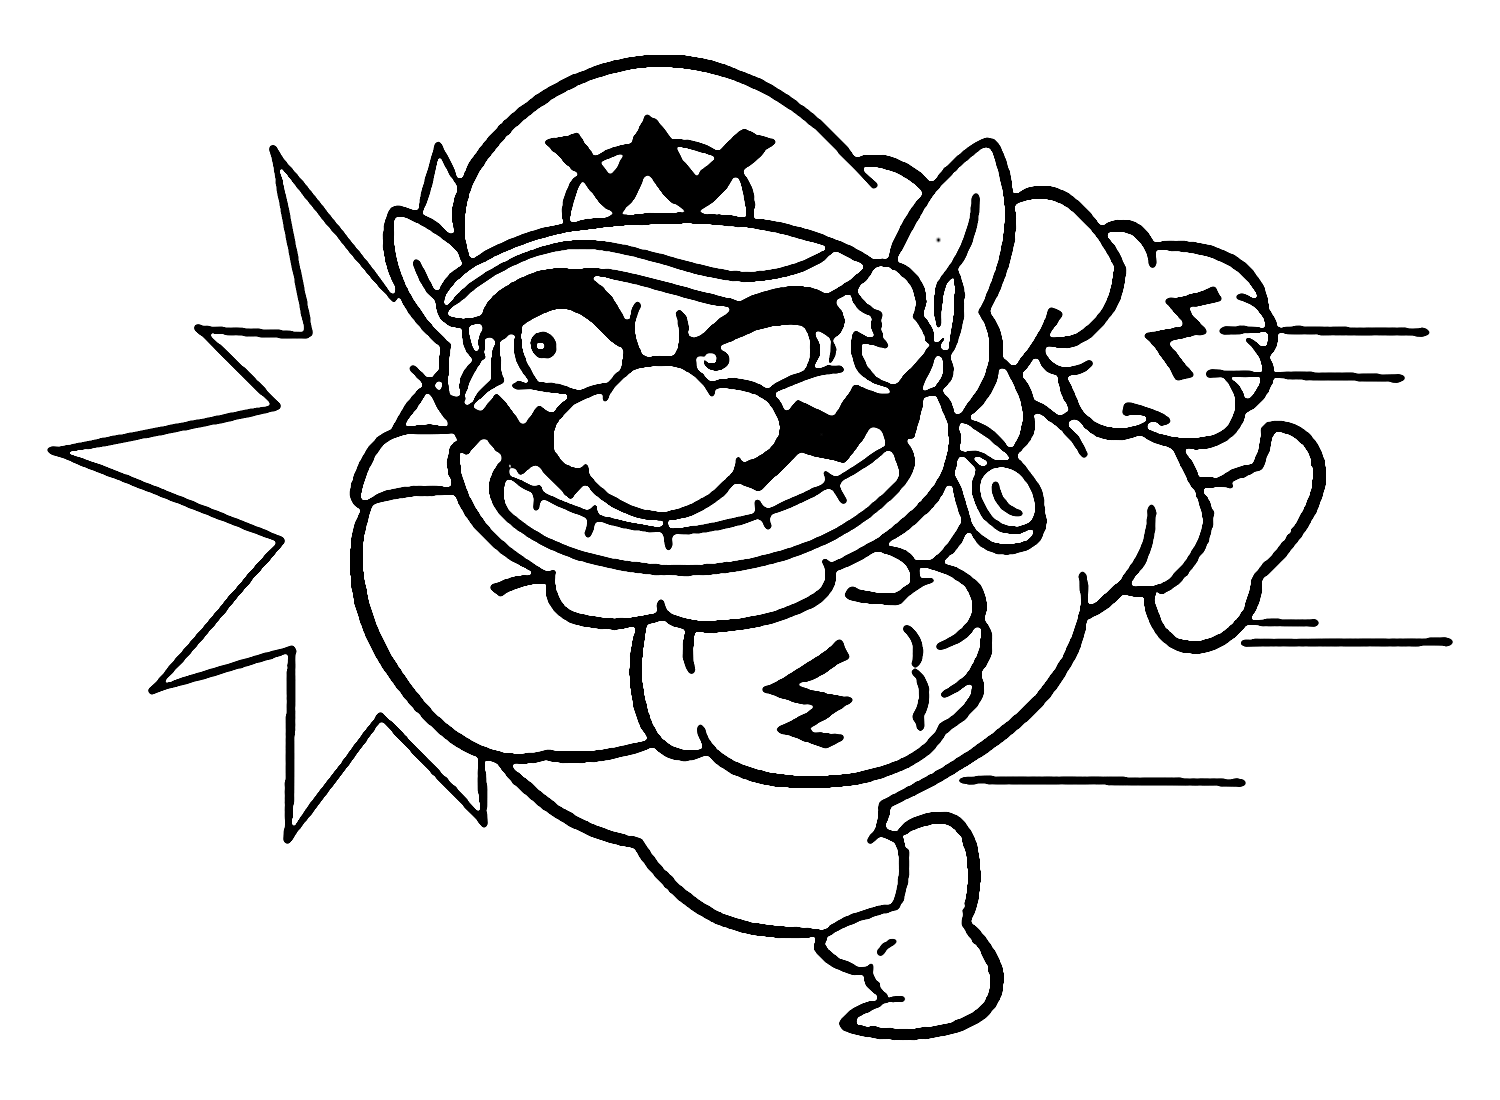 Wario in Super Mario Coloring Pages